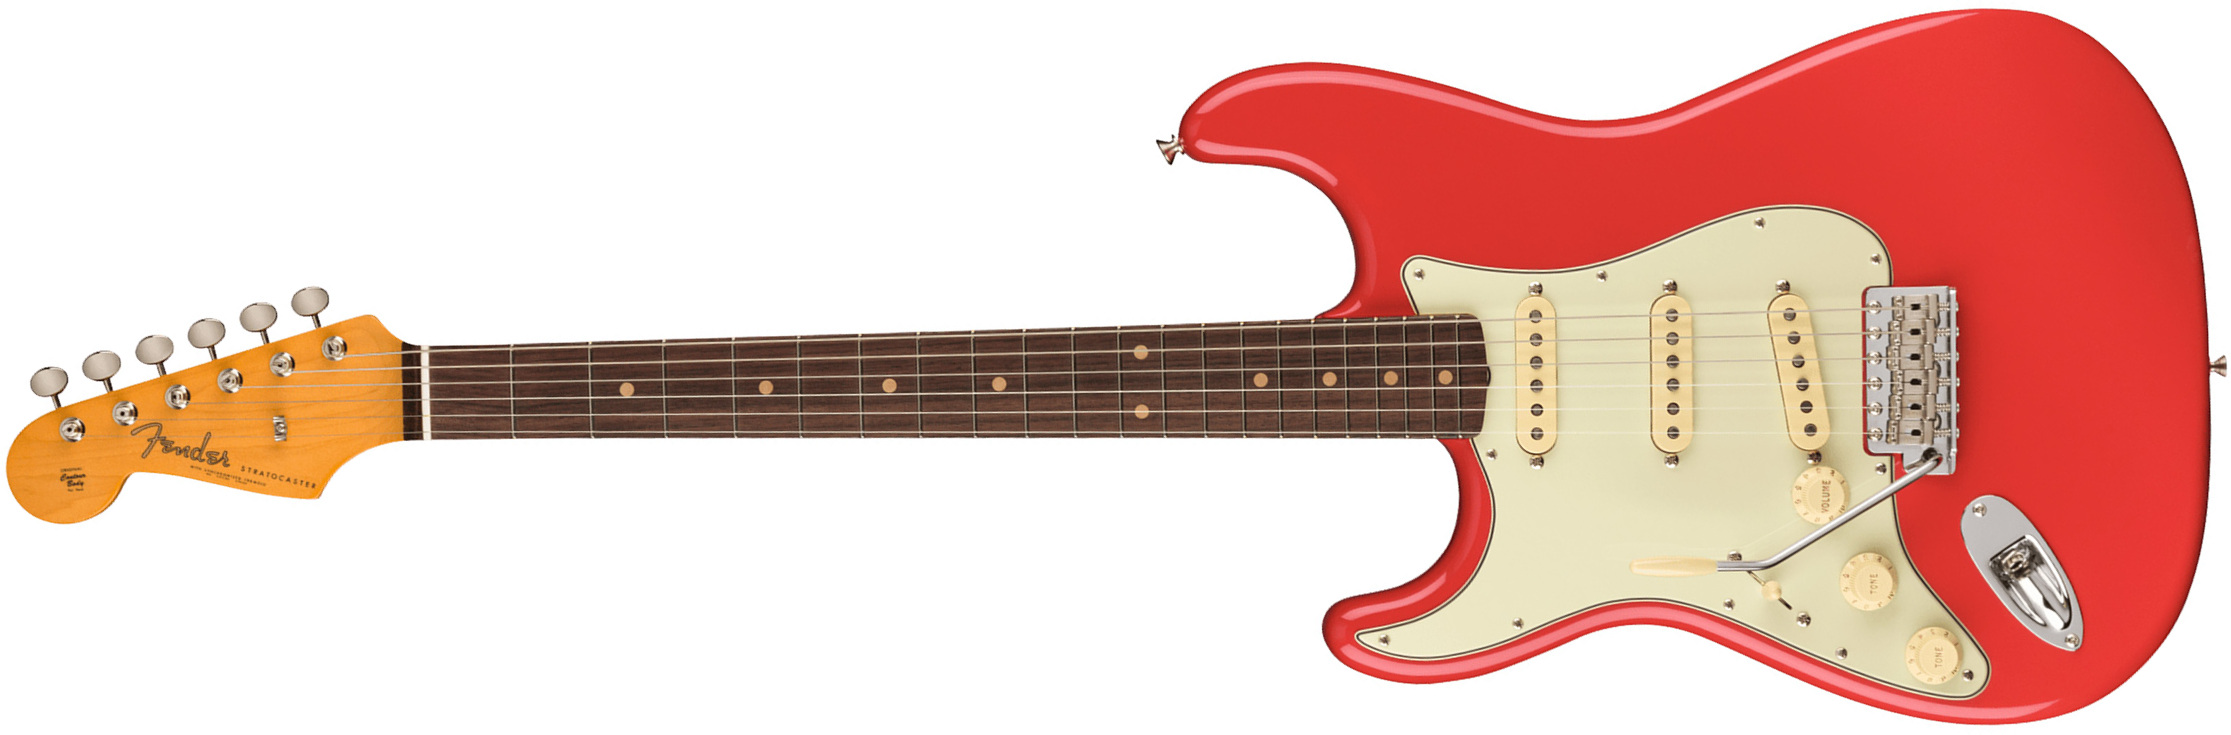 Fender Strat 1961 American Vintage Ii Lh Gaucher Usa 3s Trem Rw - Fiesta Red - E-Gitarre für Linkshänder - Main picture